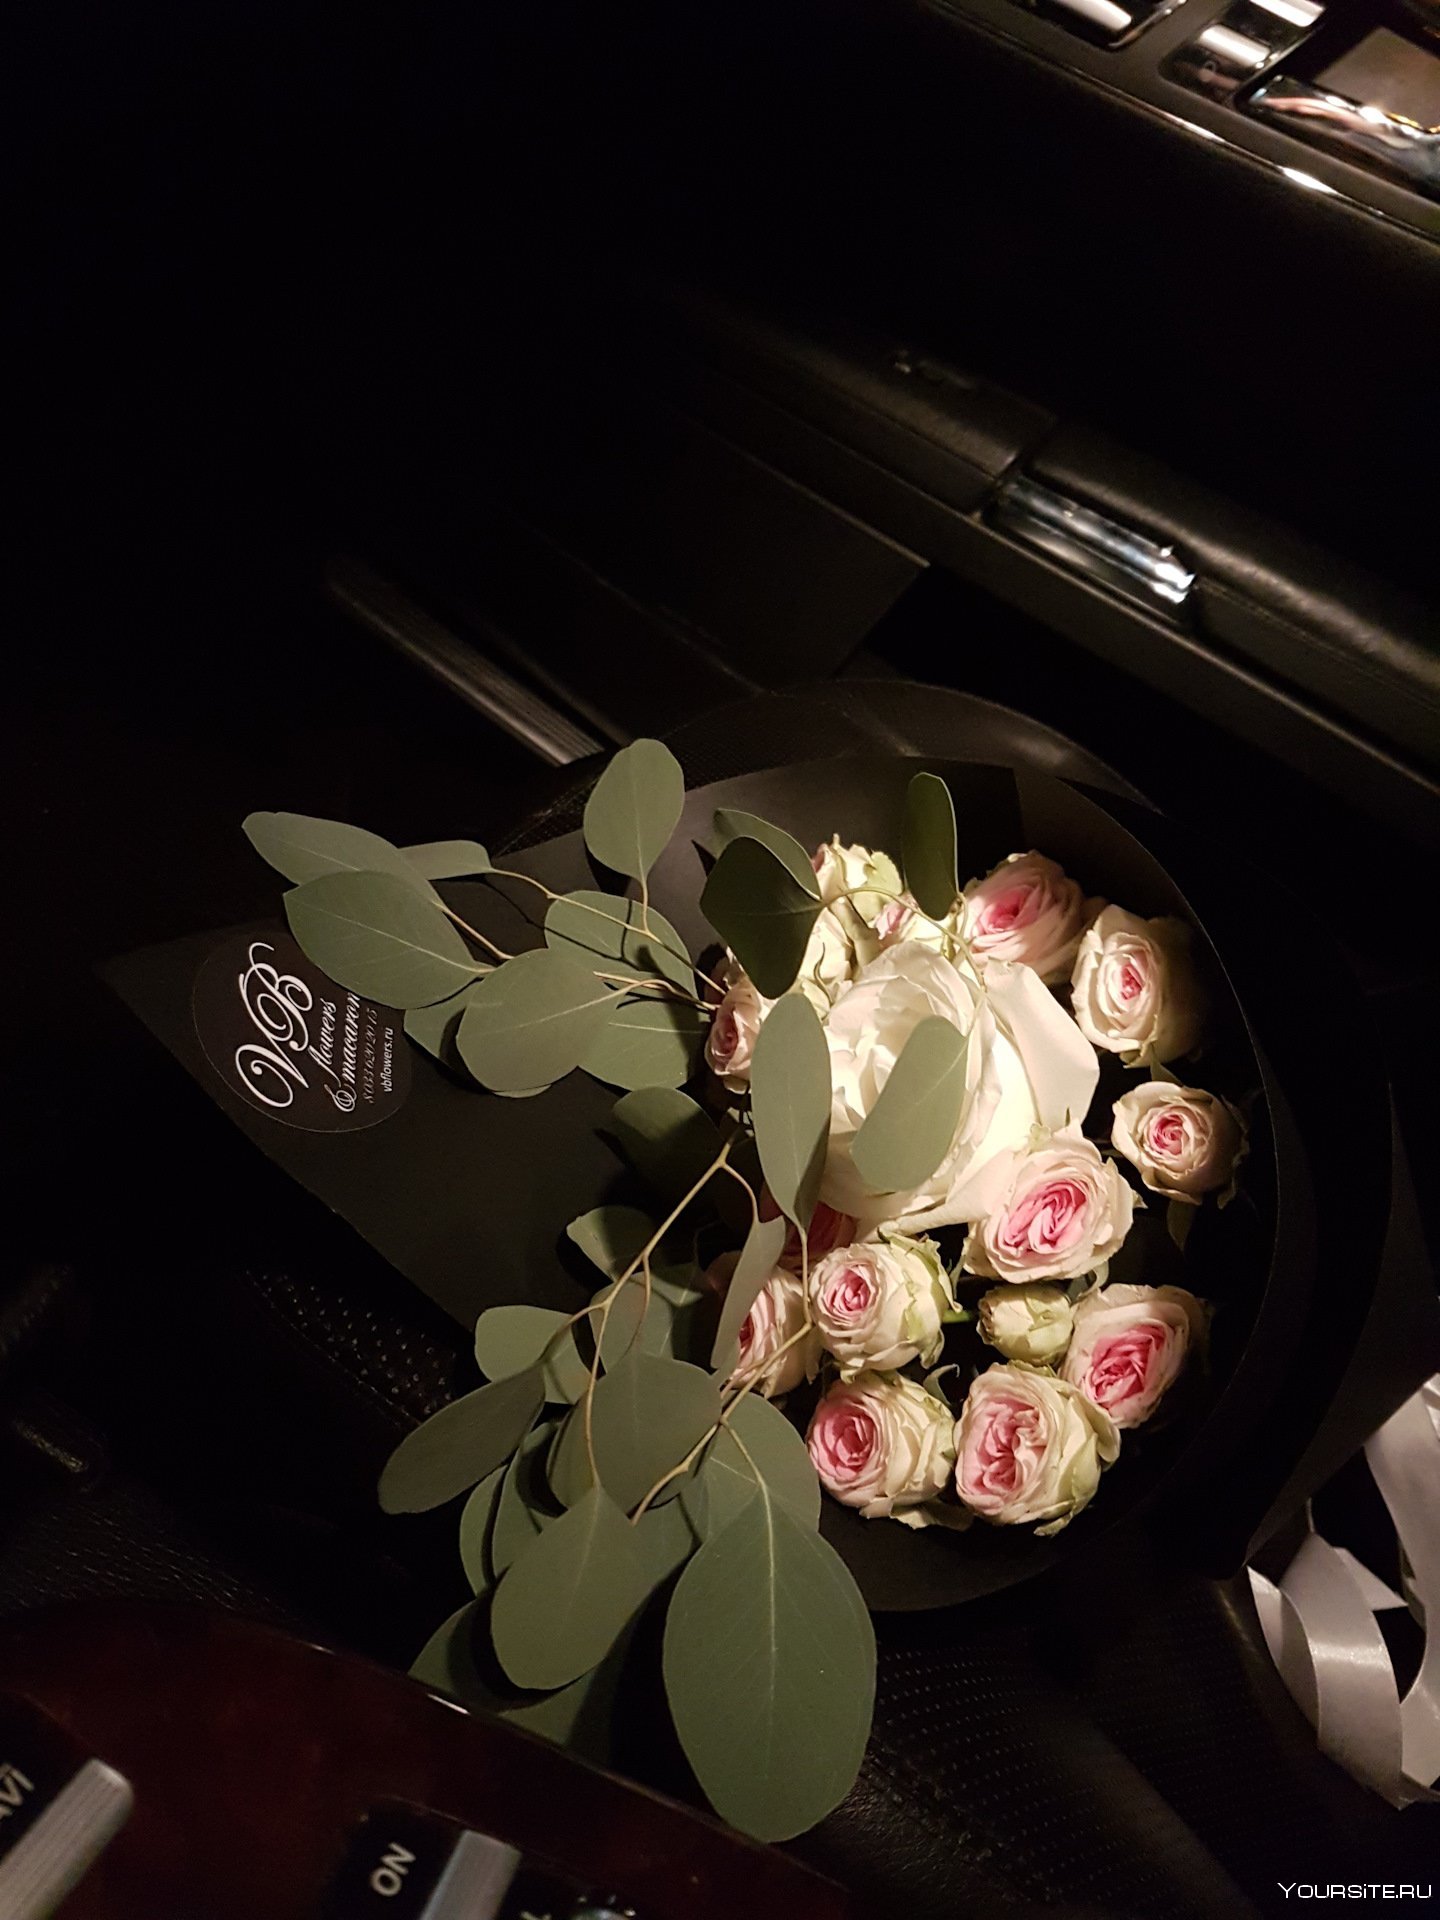 Цветы в машине киа рио фото